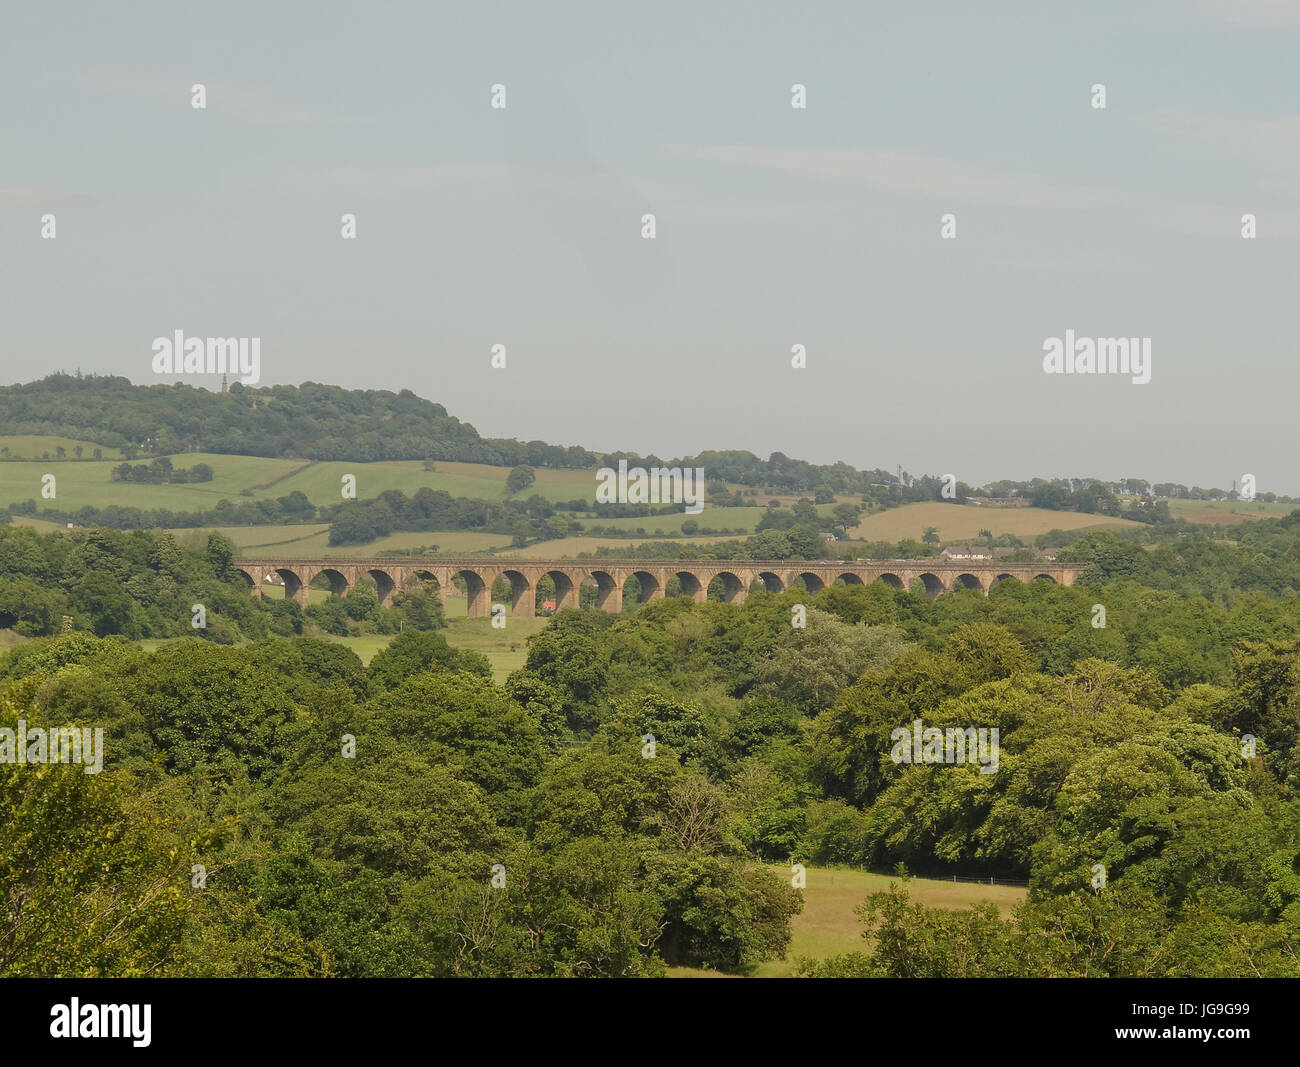 Valle de Almendras Viaducto Kirkliston, tomado de la Union canal Foto de stock